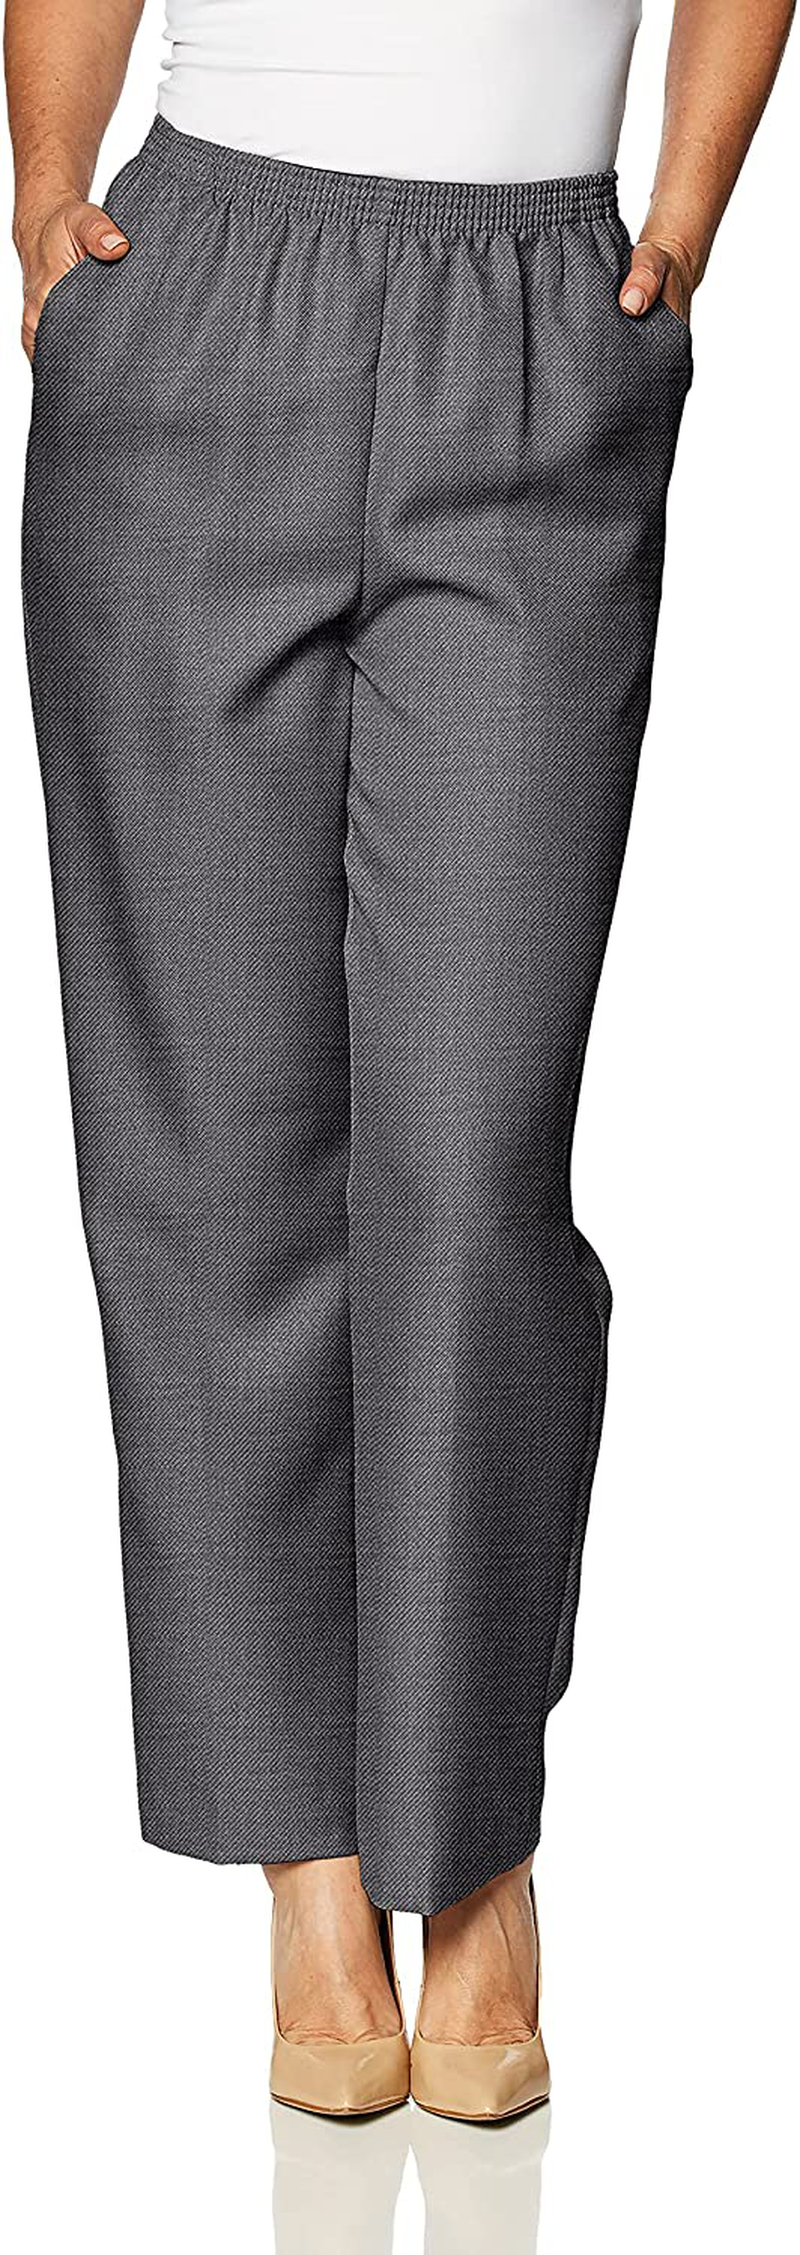 Alfred Dunner Women's Short Length Pant